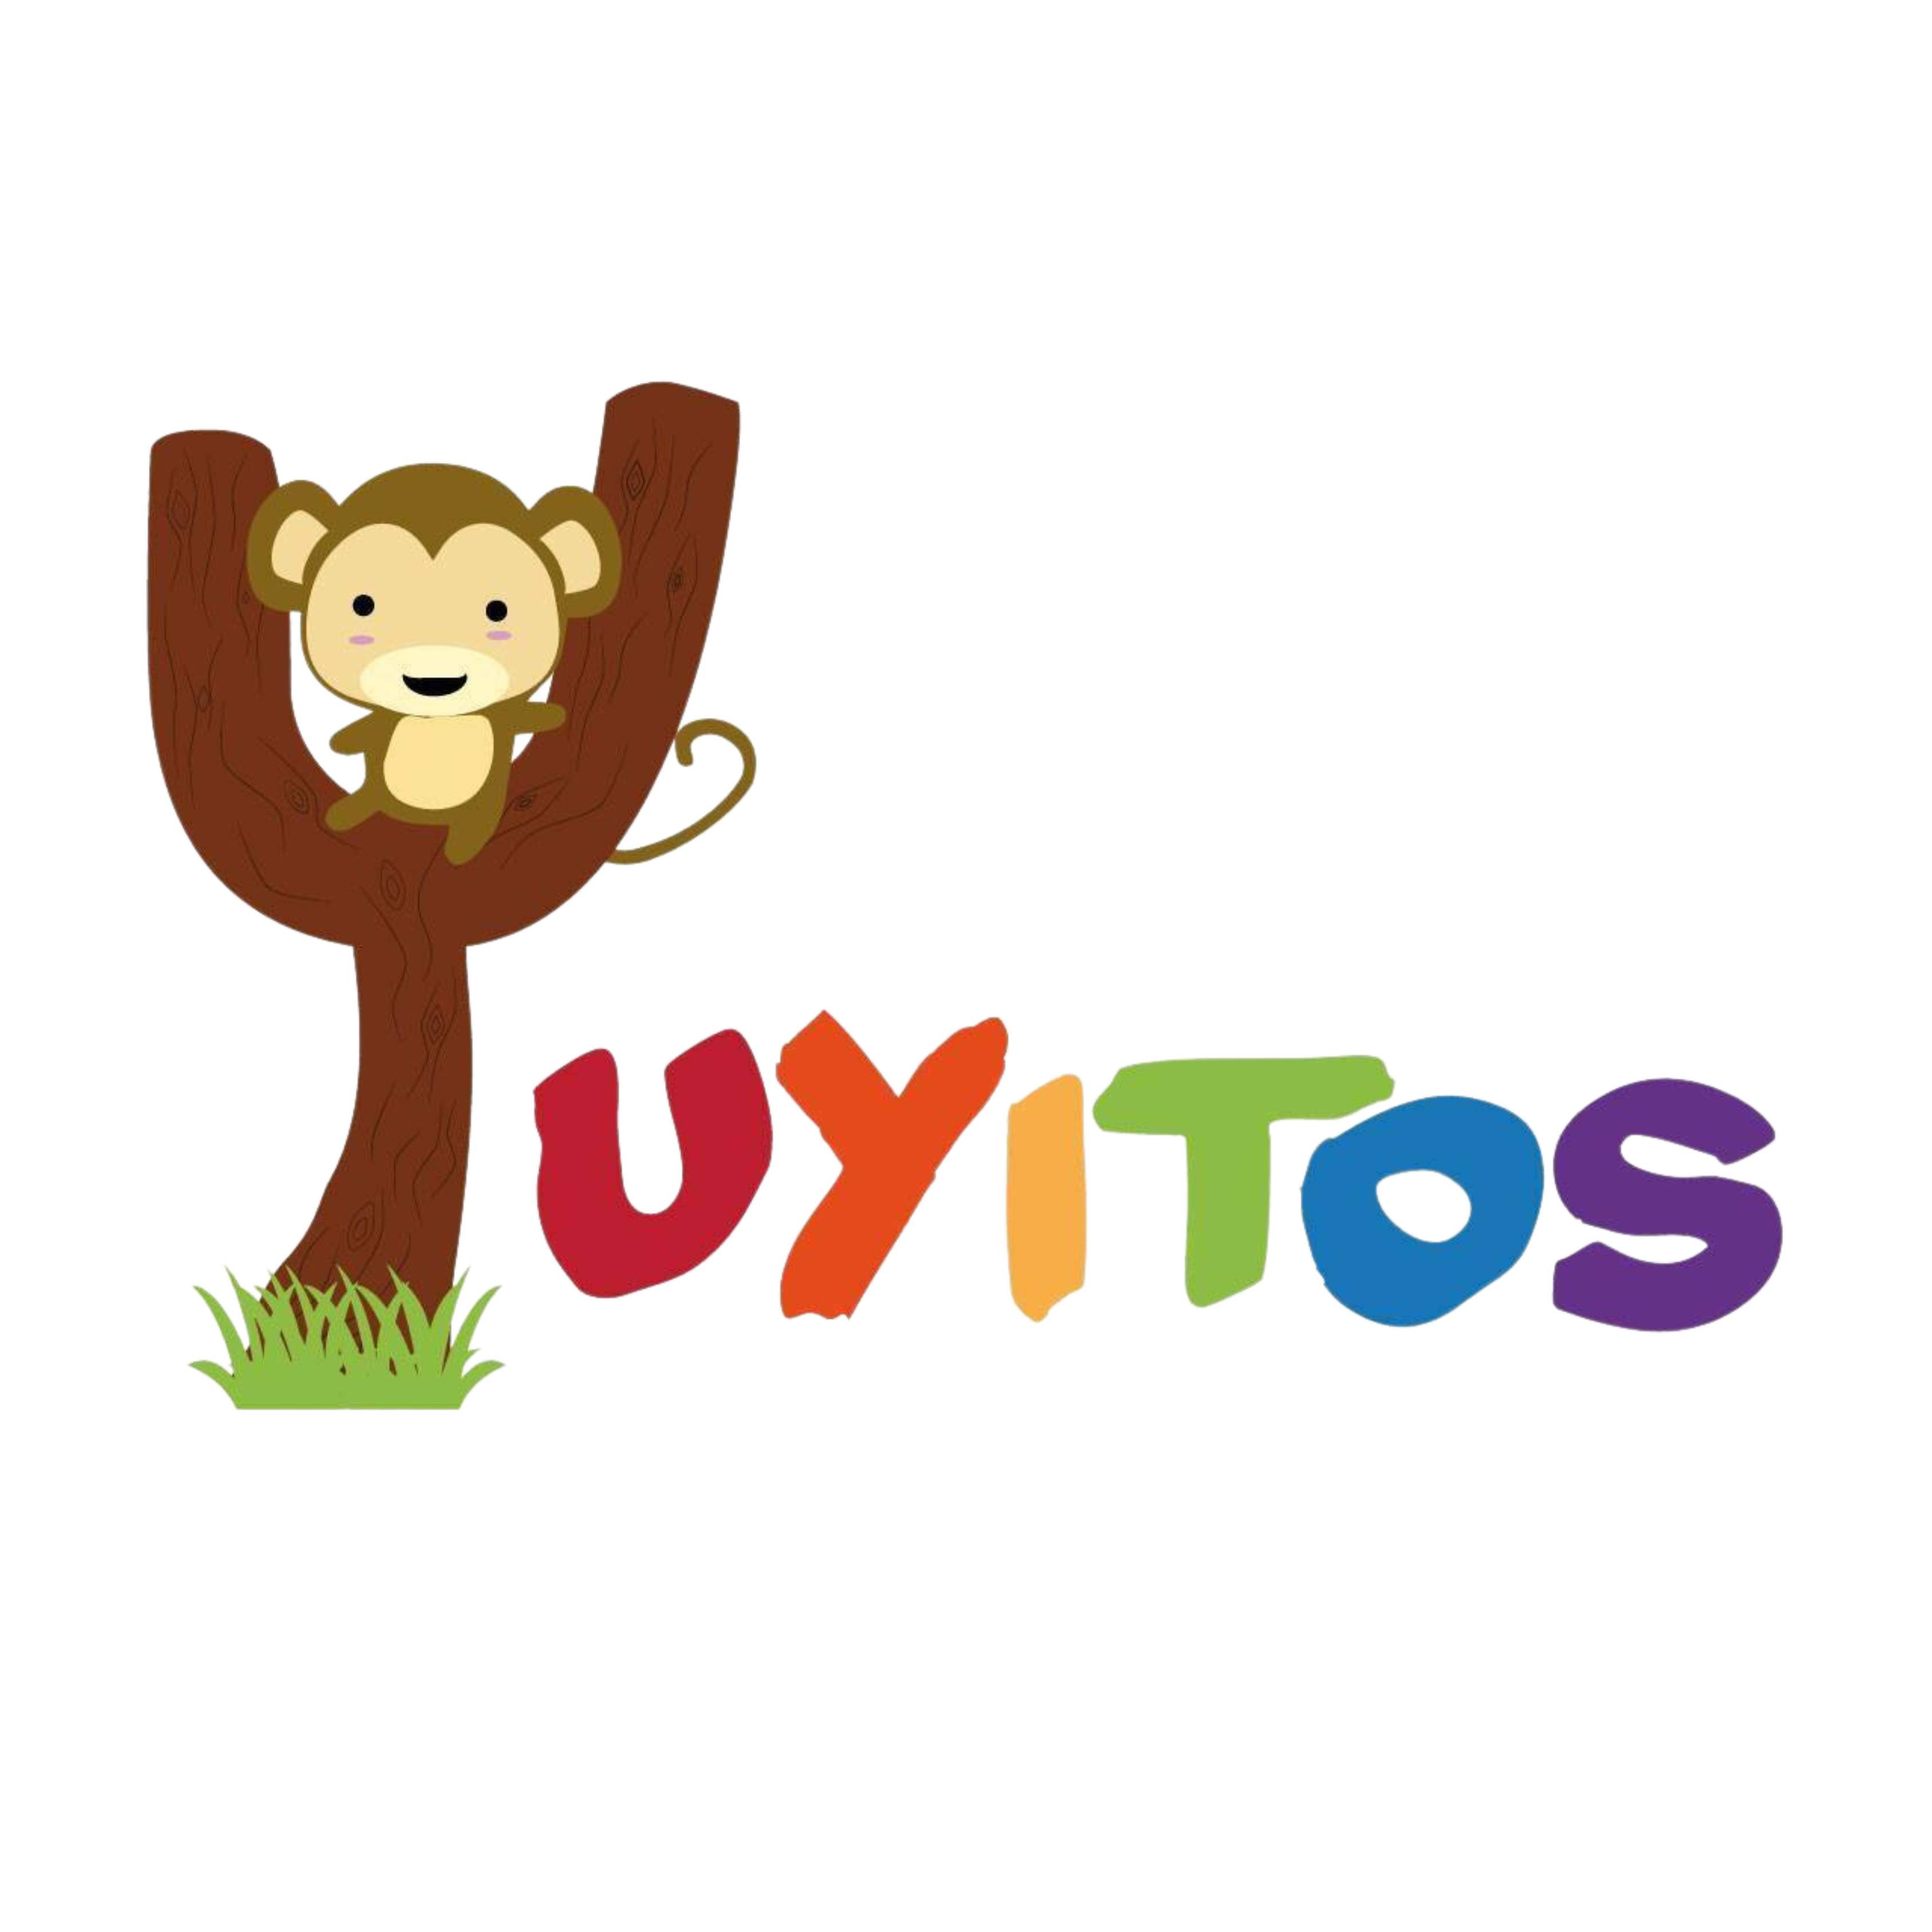 Yuyitos